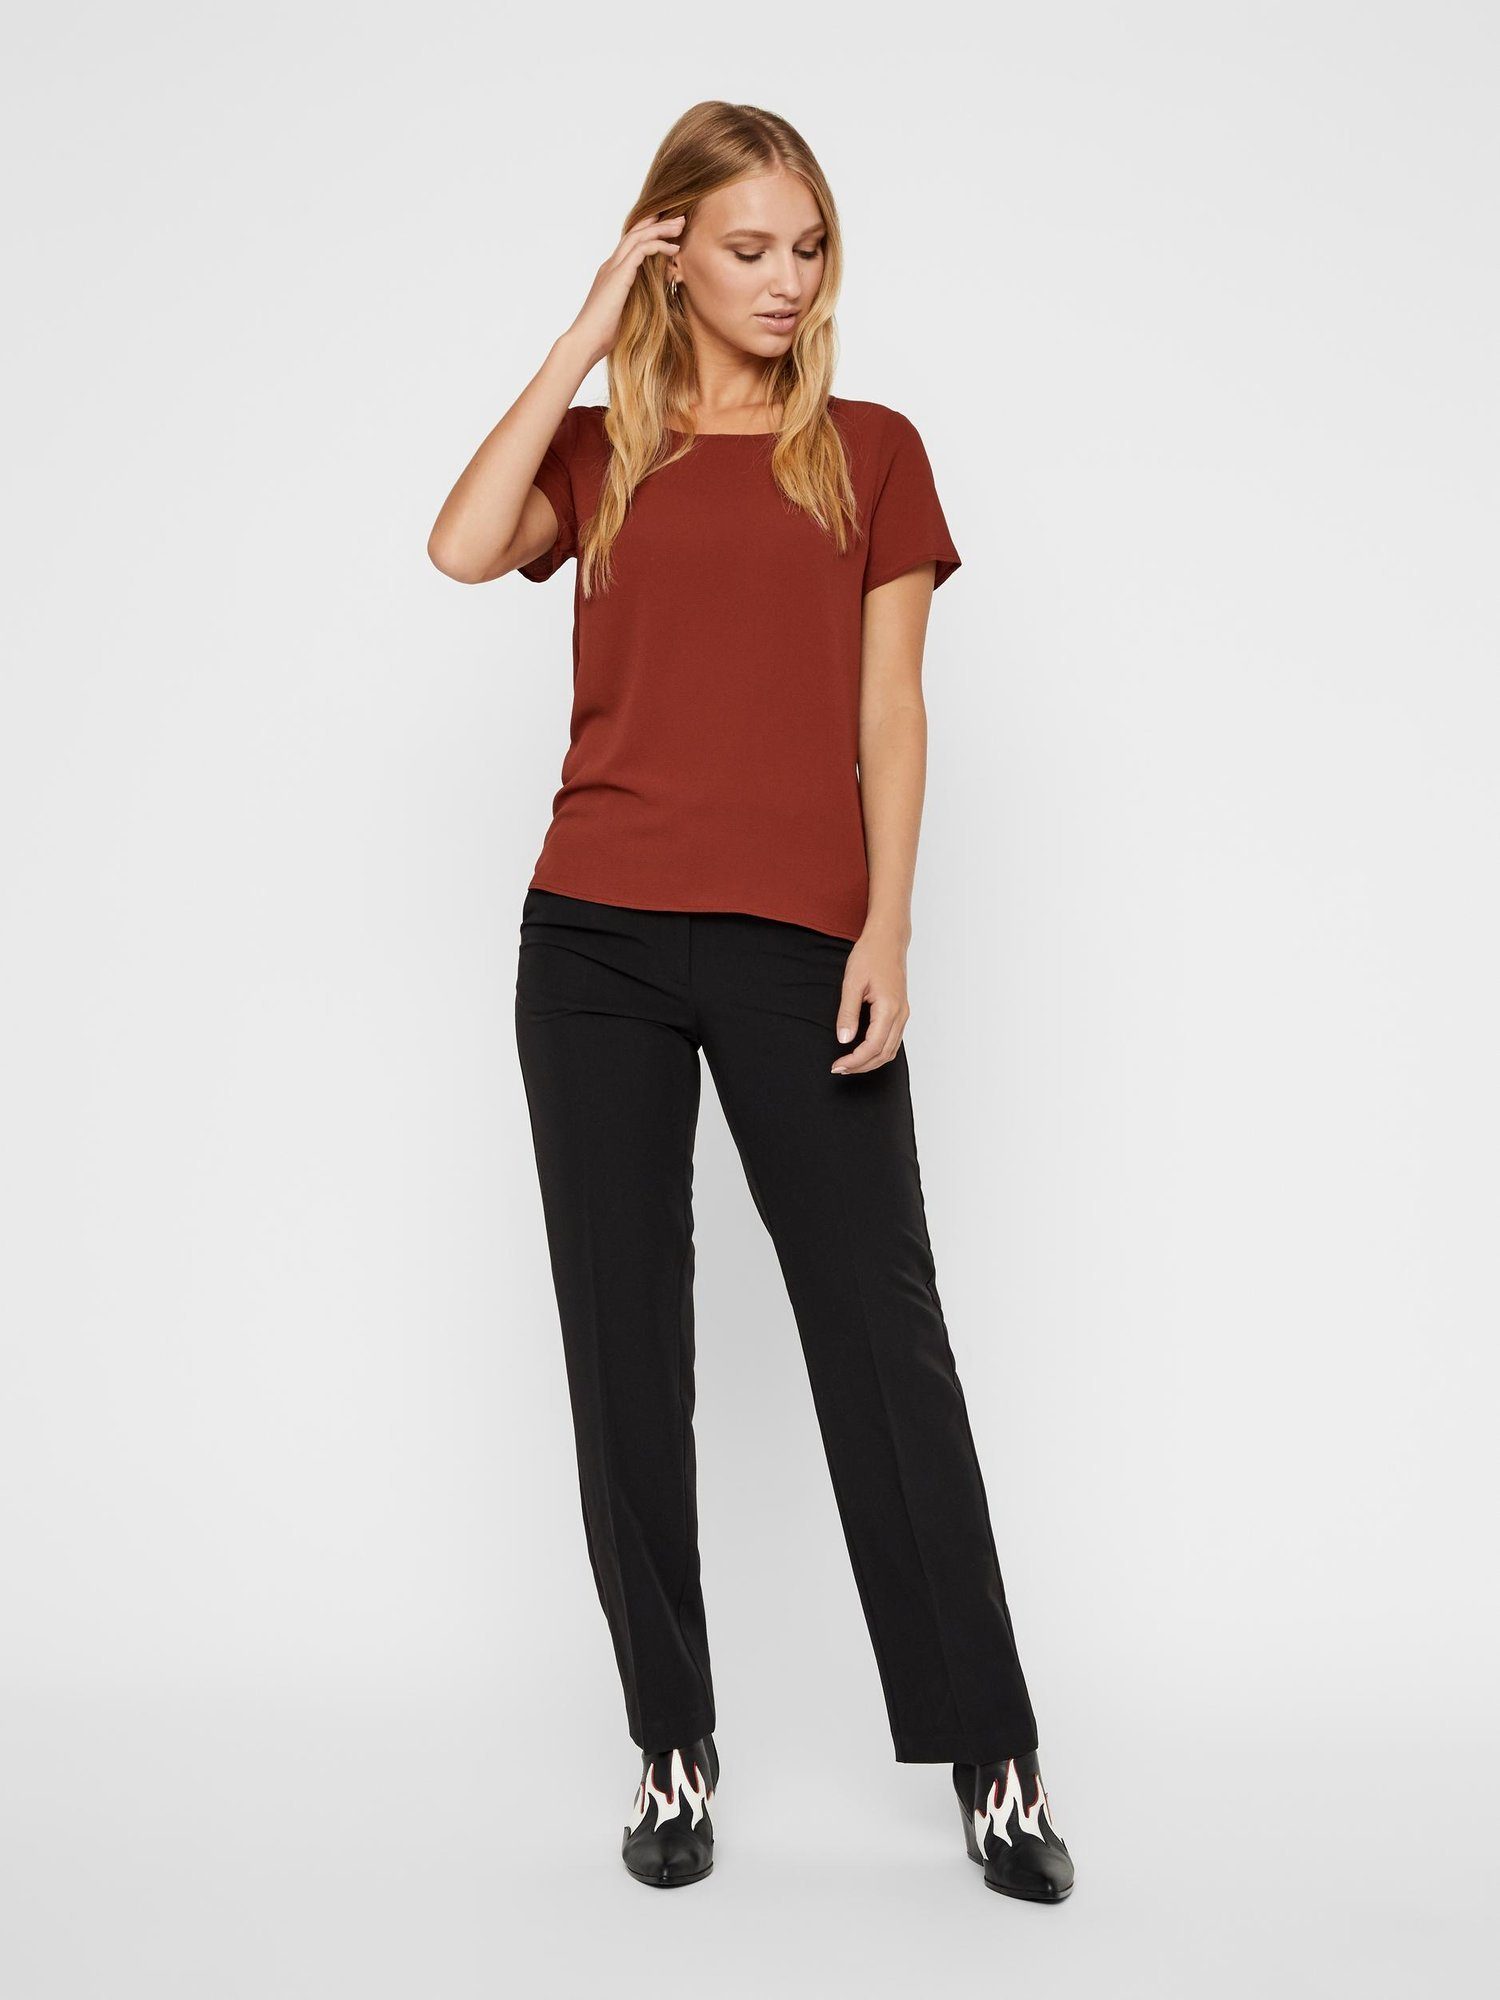 Vero Moda T-Shirt »Vero Moda Damen Top T-Shirt Oberteil mit Reißverschluss,  kurzarm« online kaufen | OTTO